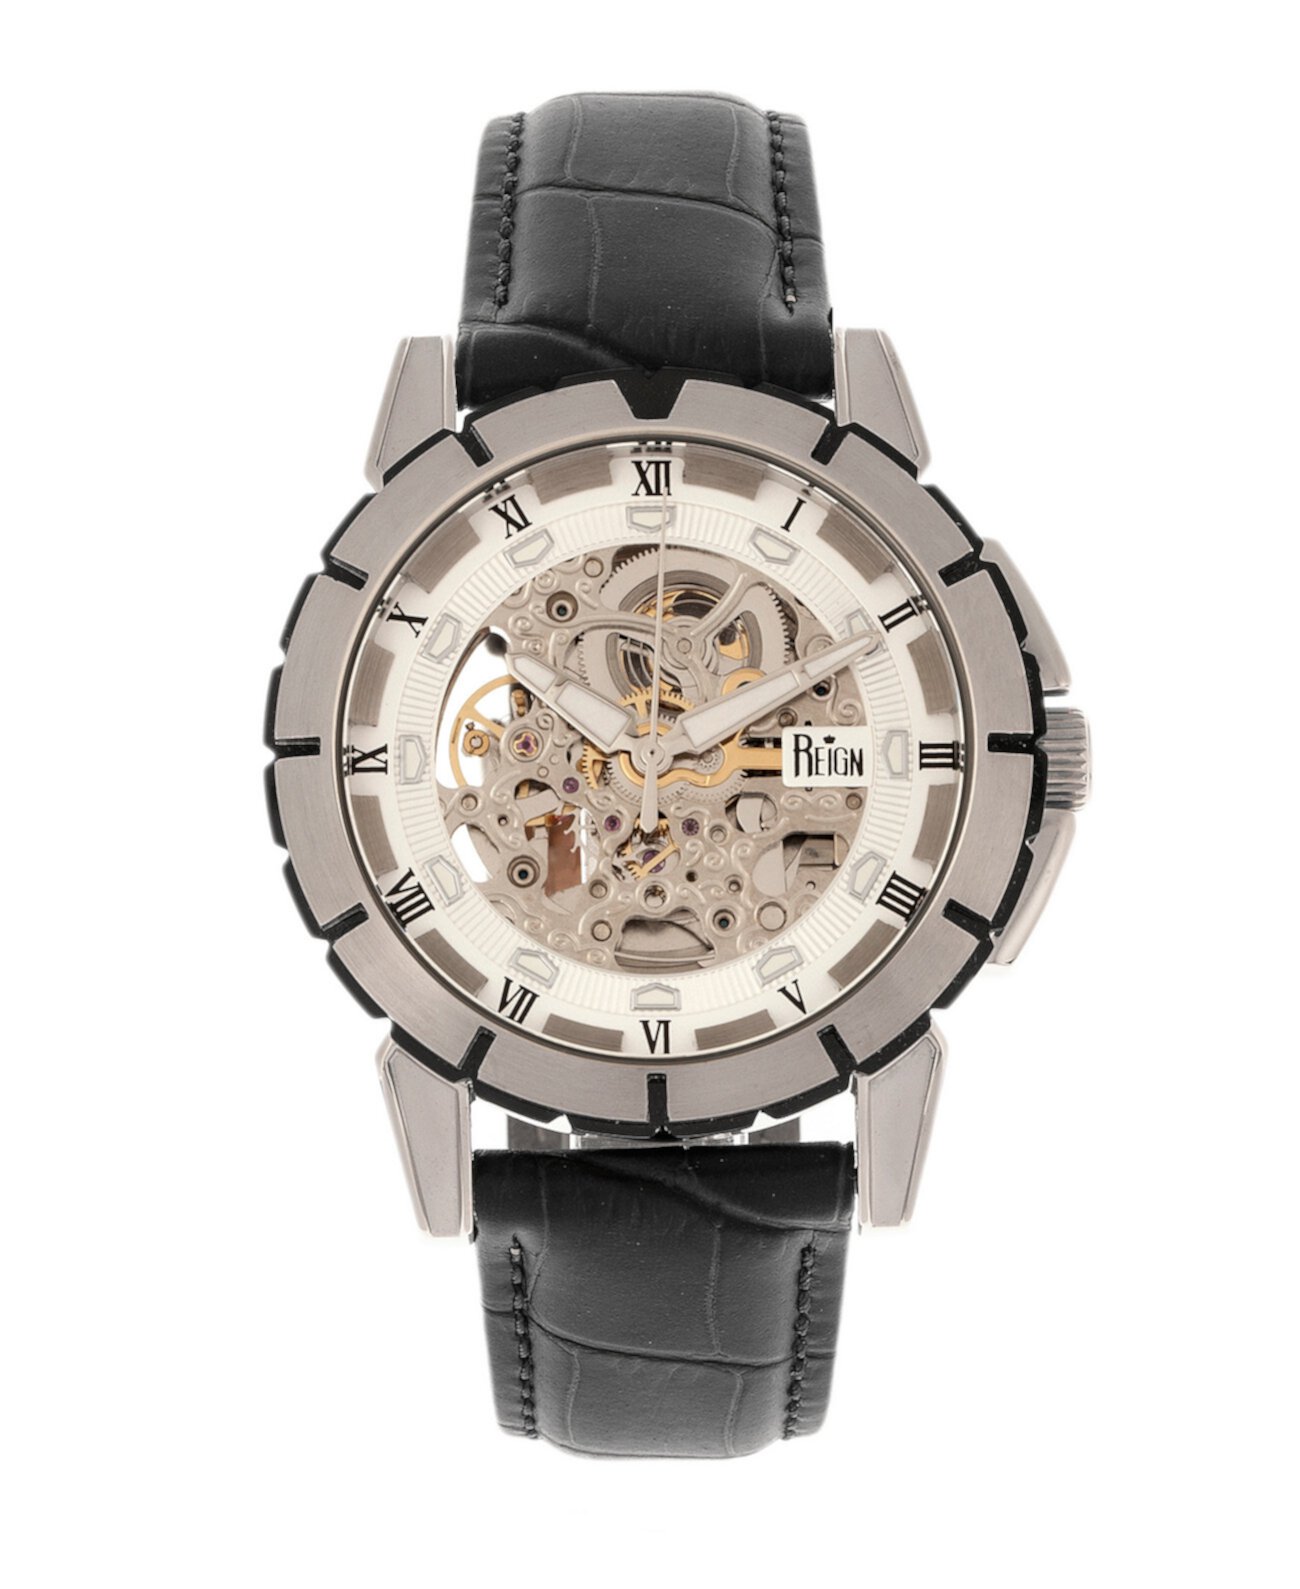 Philippe Автоматический белый циферблат, часы из натуральной черной кожи 41 мм Reign